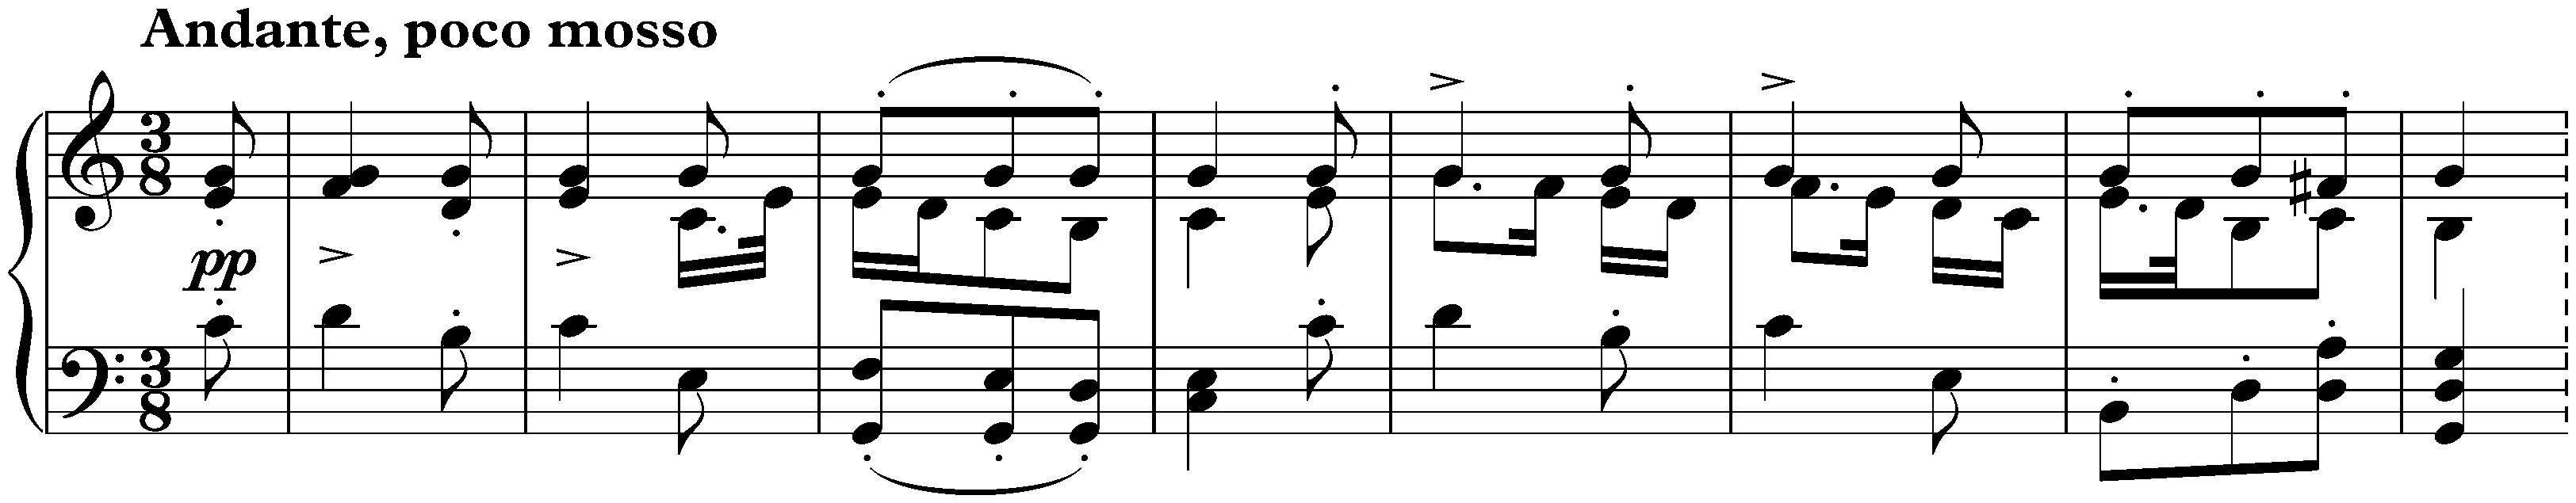 Sonata in A minor, D 845; 2. Andante, poco mosso